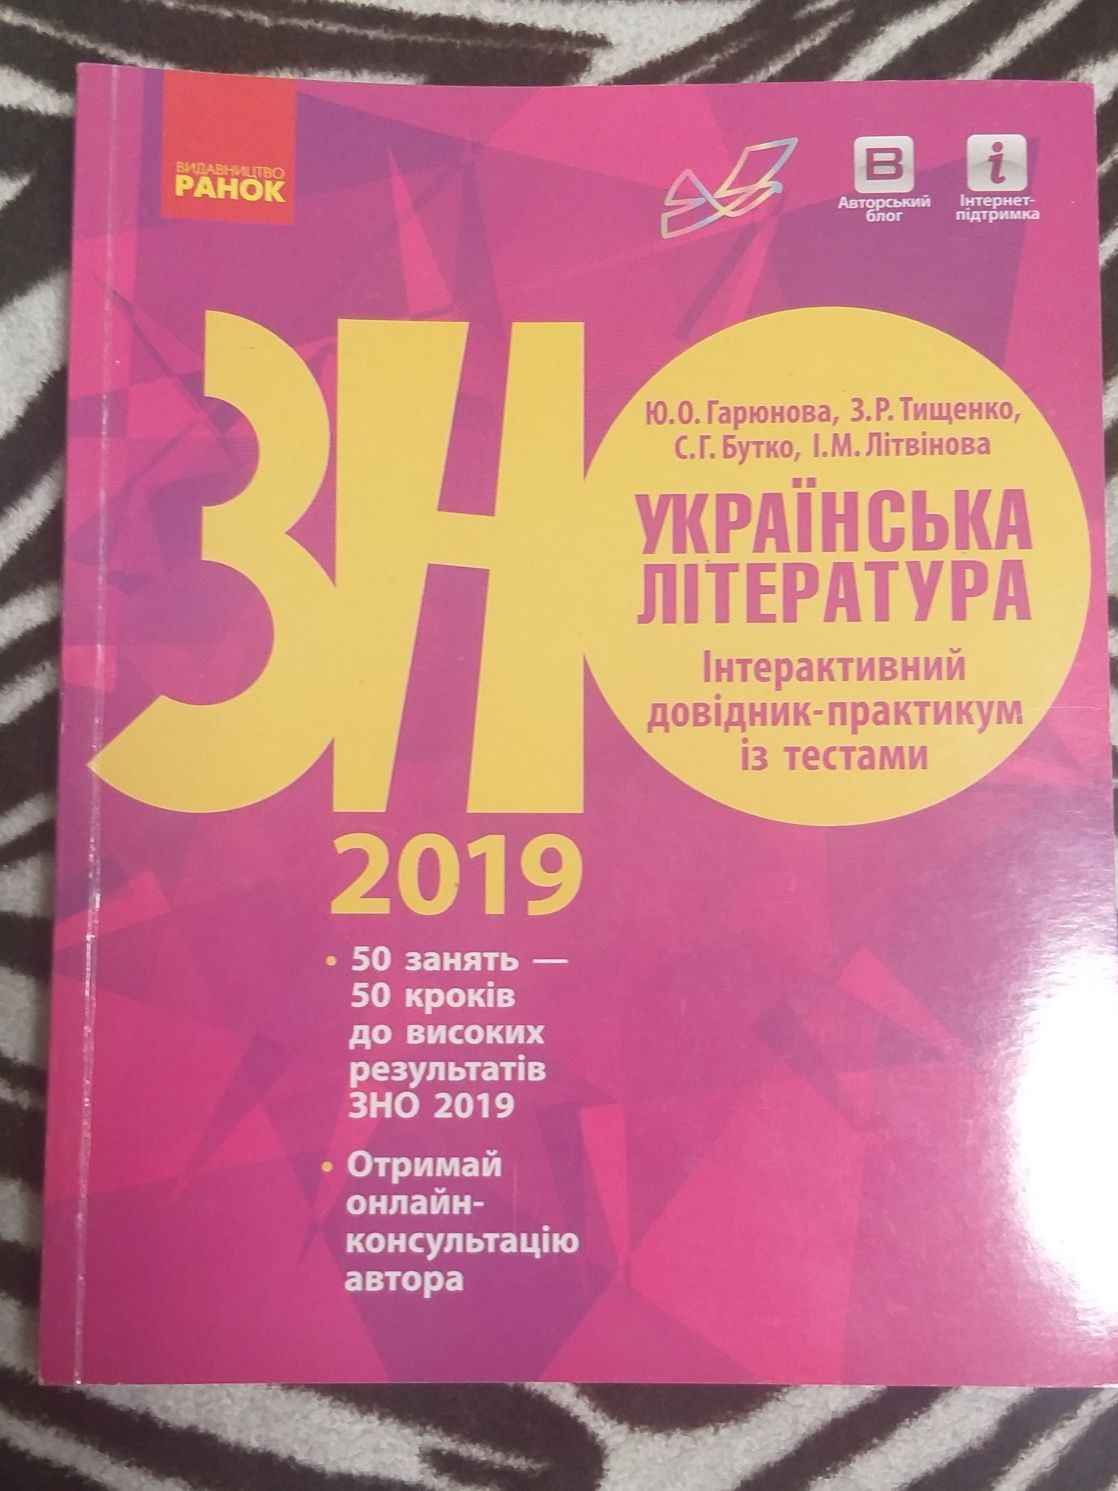 Сборники для подготовки к ЗНО по украинской литературе